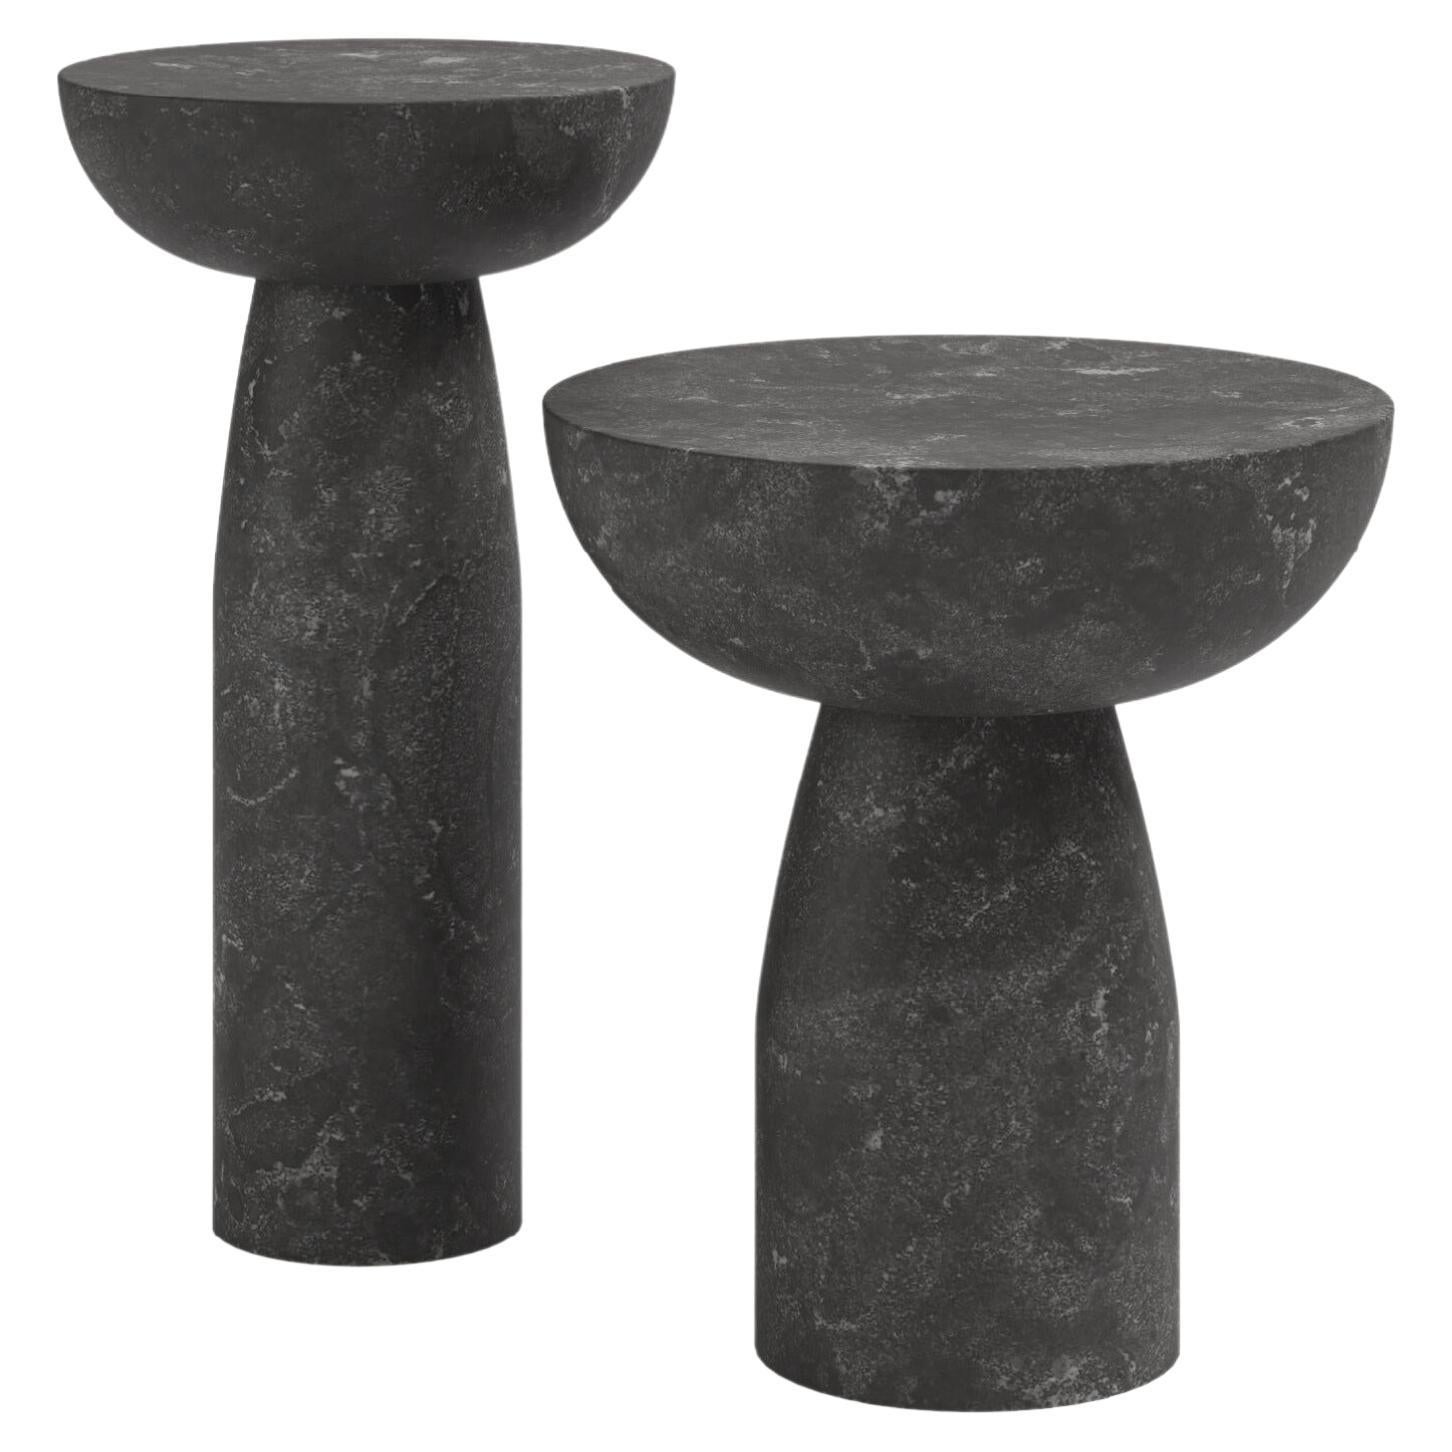 FORM(LA) Sfera Round Side Table 18”L x 18”W x 20”H Nero Petite Granite